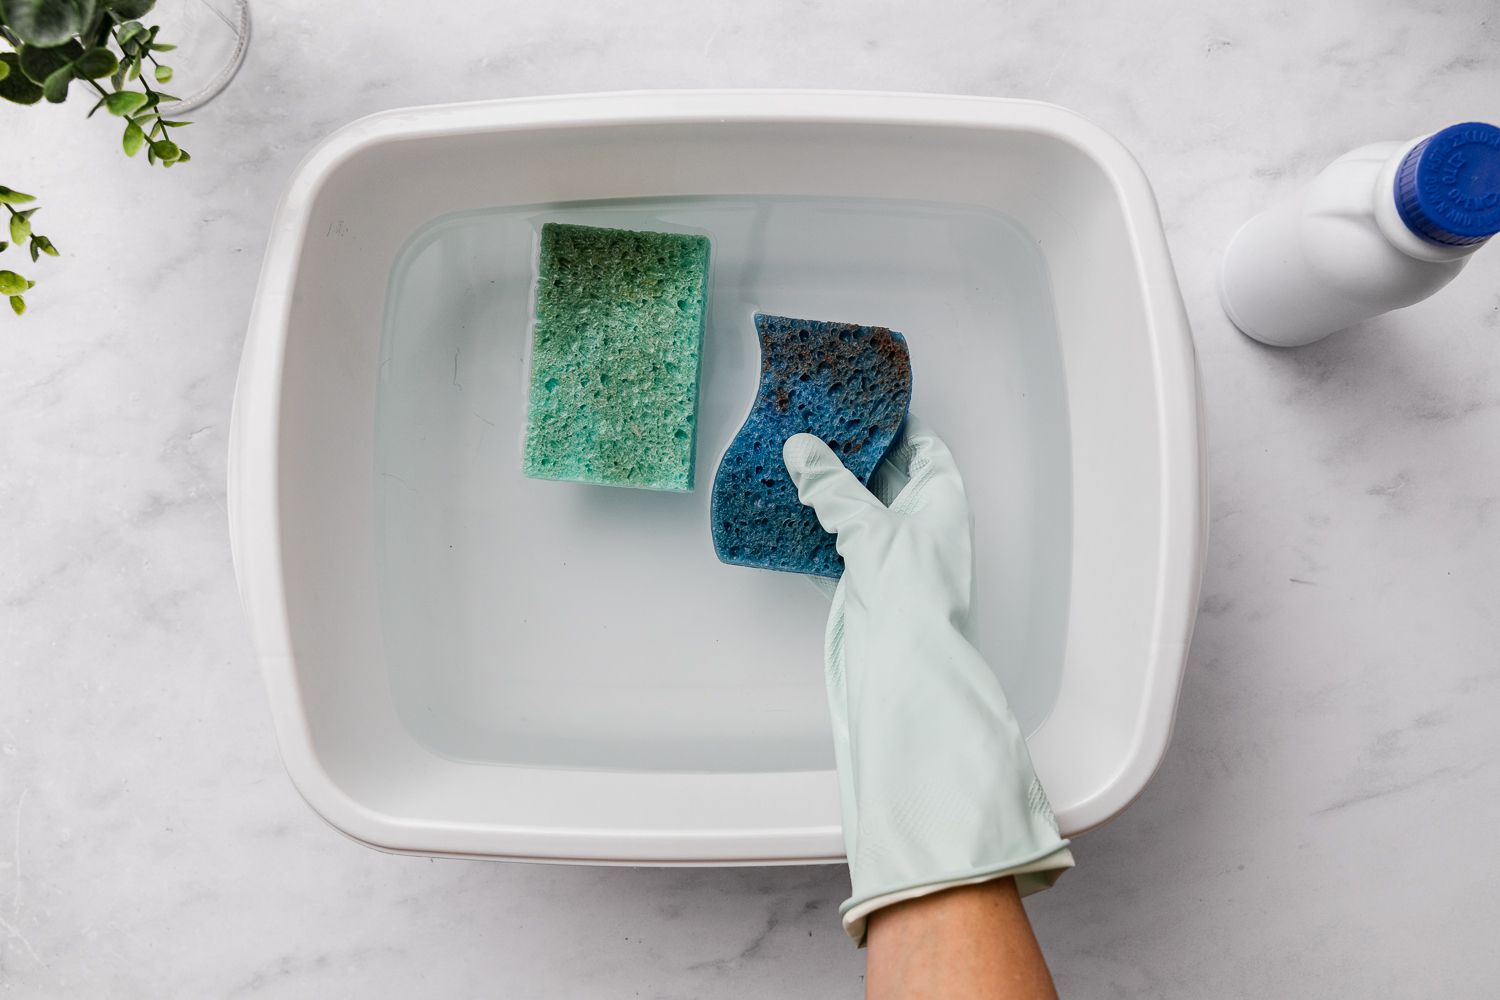 Remojar las esponjas en una solución limpiadora